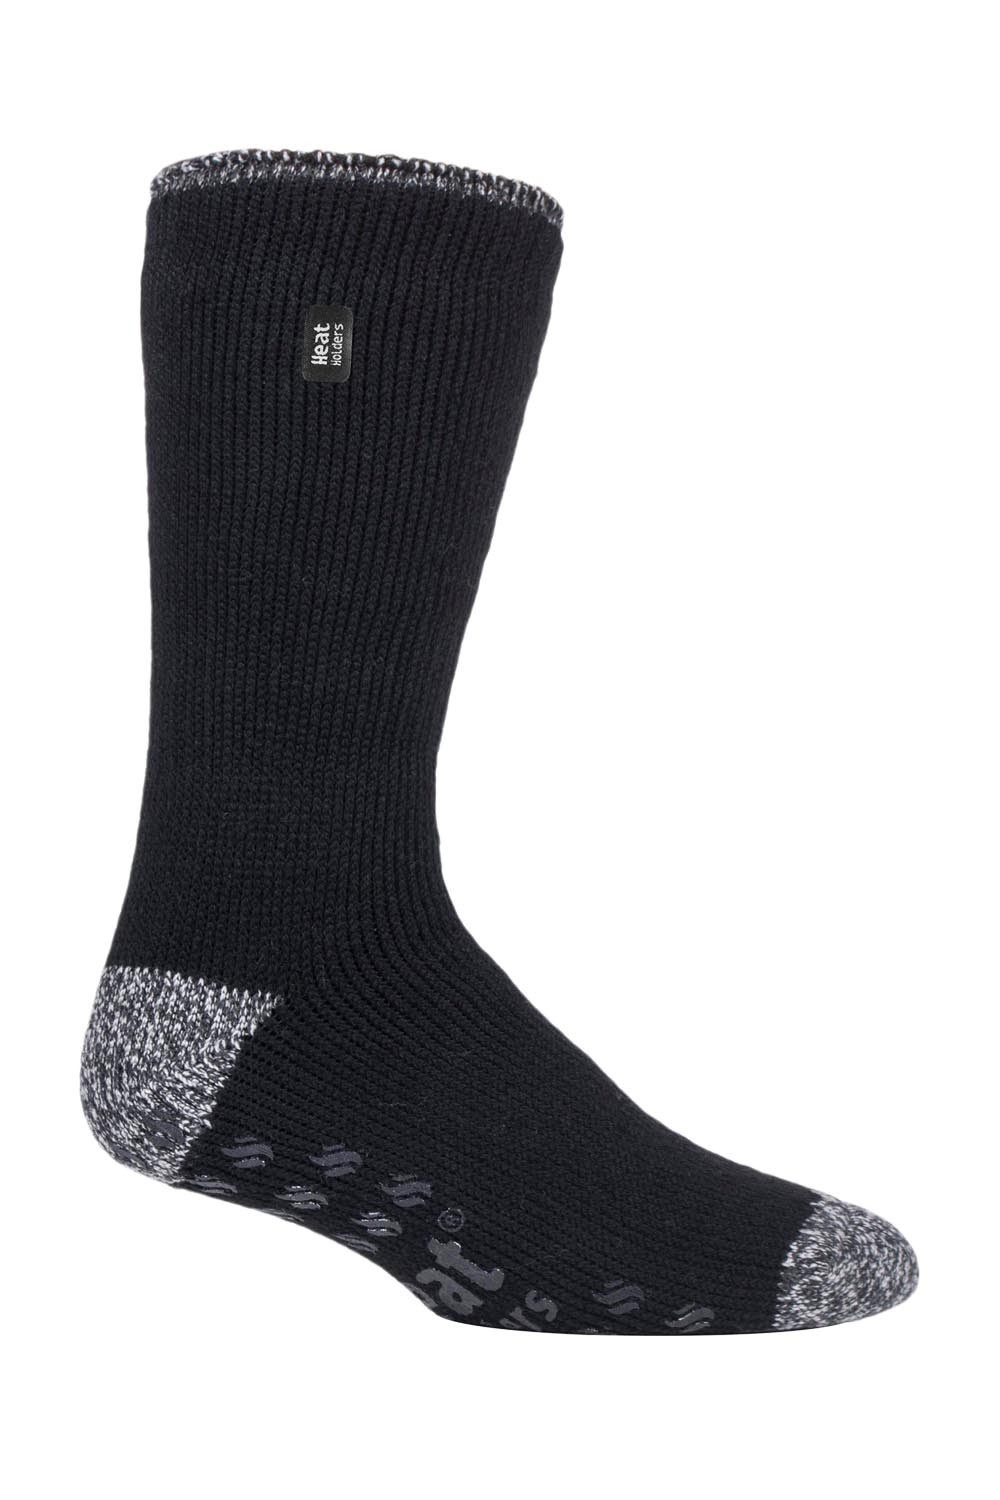 Mens Patterned Thermal Slipper Socks